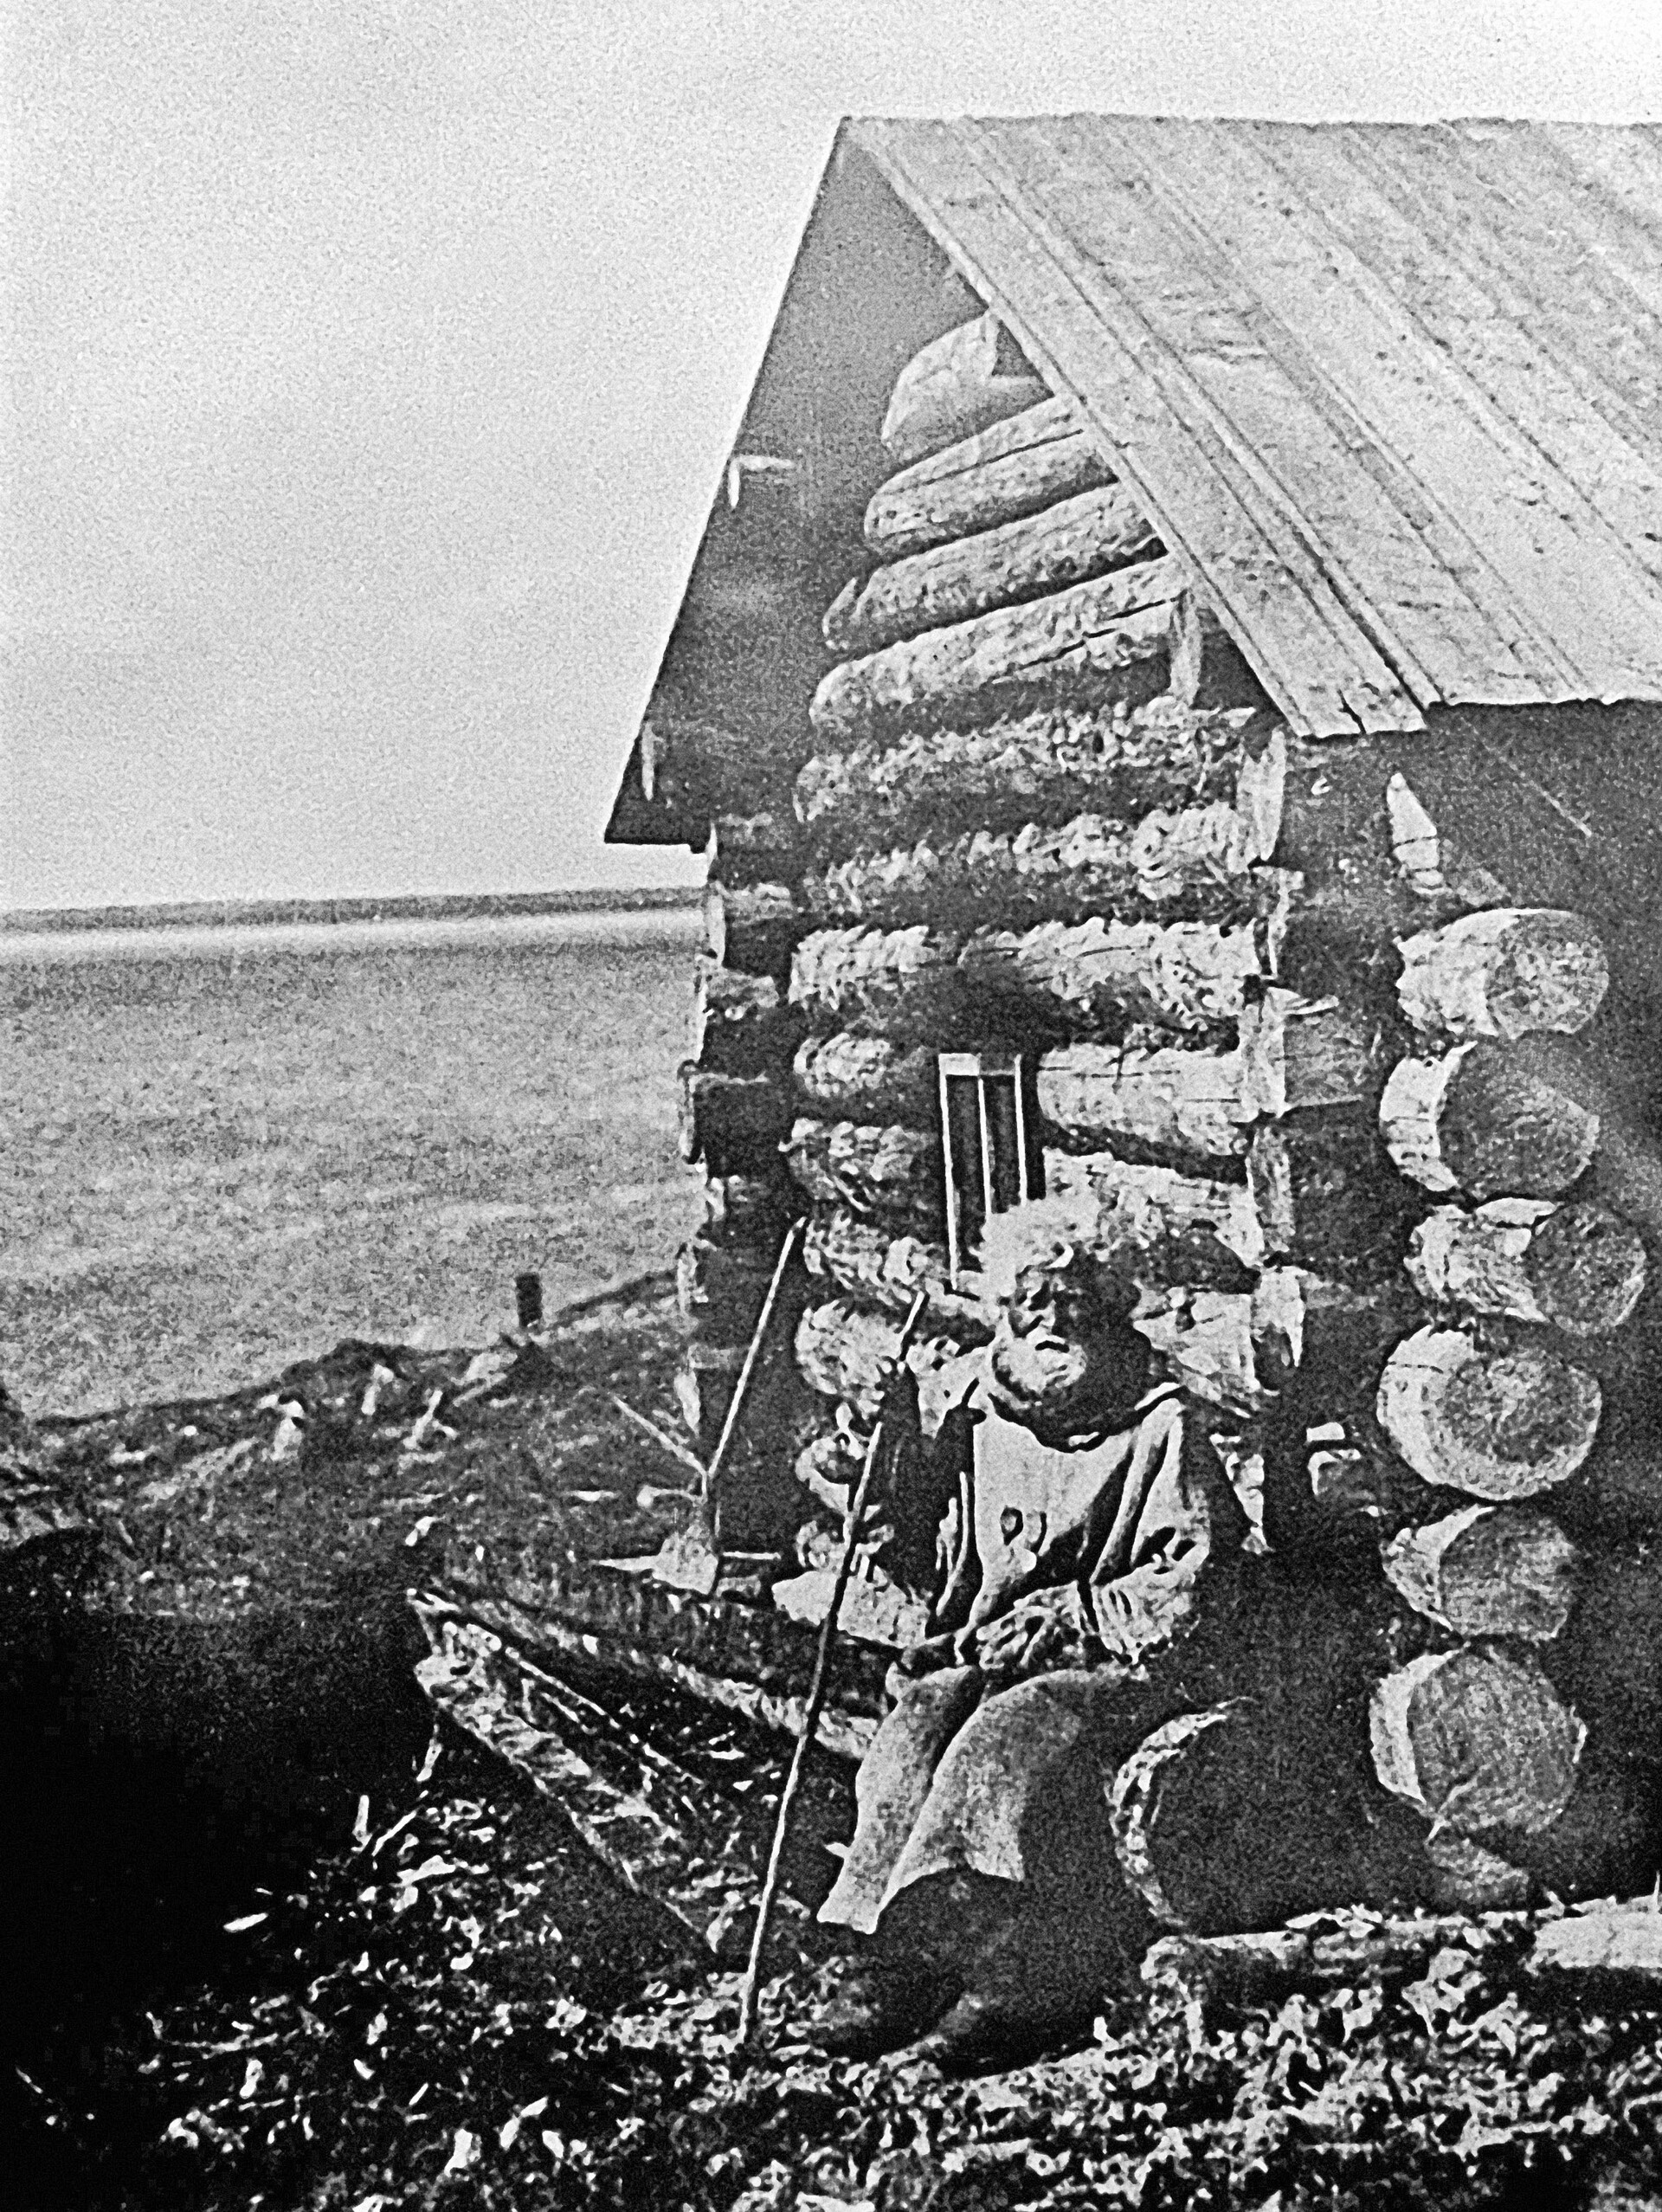  Um dos primeiros moradores de Murmansk: o pescador Semion Korjev em seu casebre. 1910.